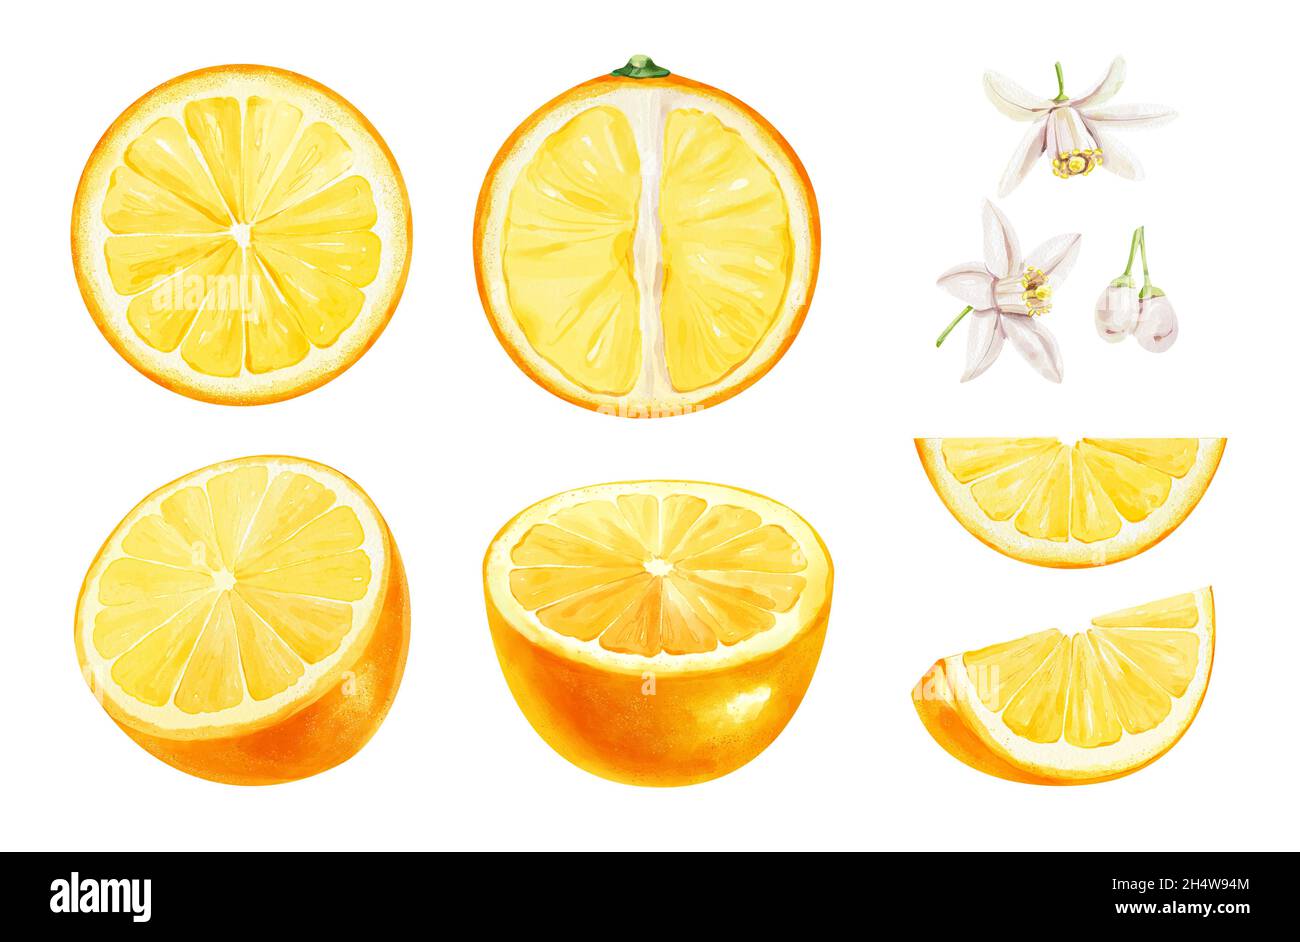 Realistisches Aquarell-Set aus geschnittenen Orangen auf weißem Hintergrund. Handgezeichnete Illustration. Stockfoto